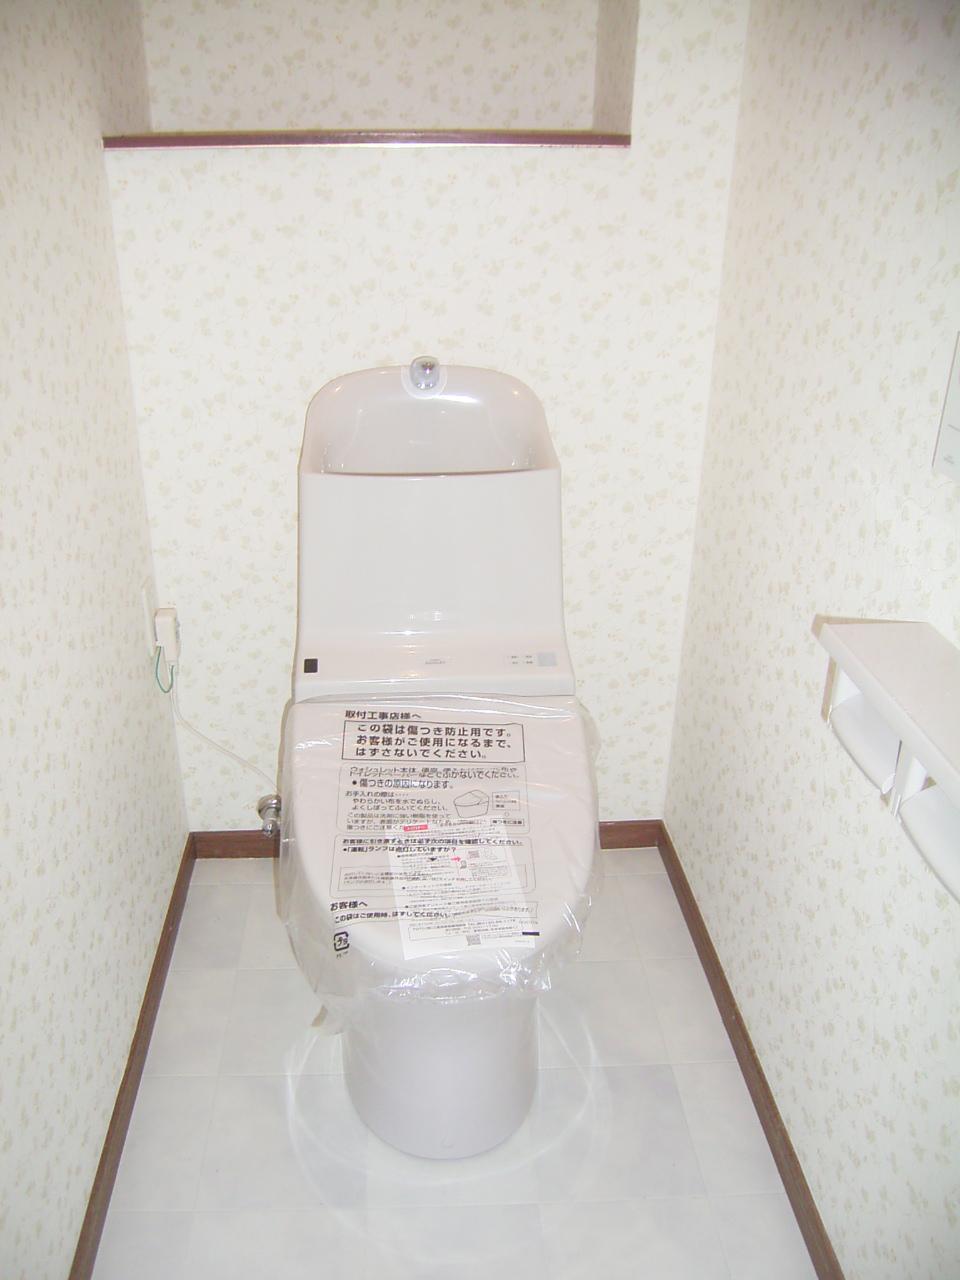 Toilet. Indoor (March 2013) Shooting, 2 ・ The third floor toilet new